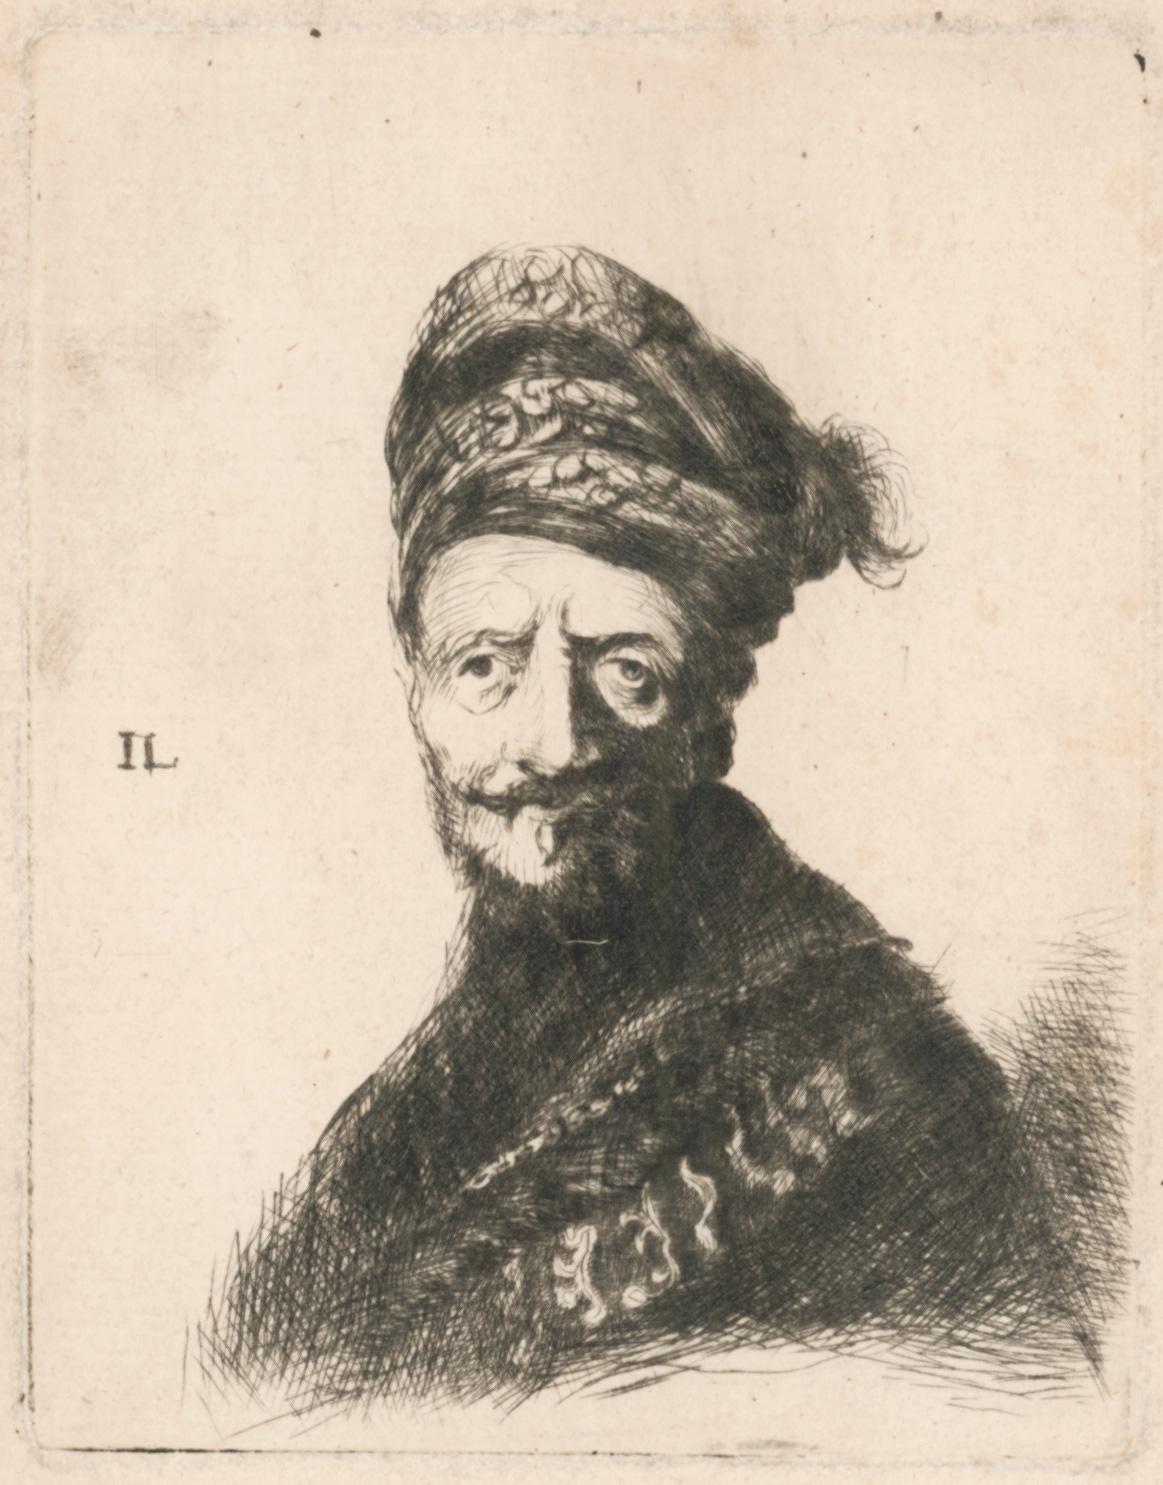 Bearded man in turban and fur